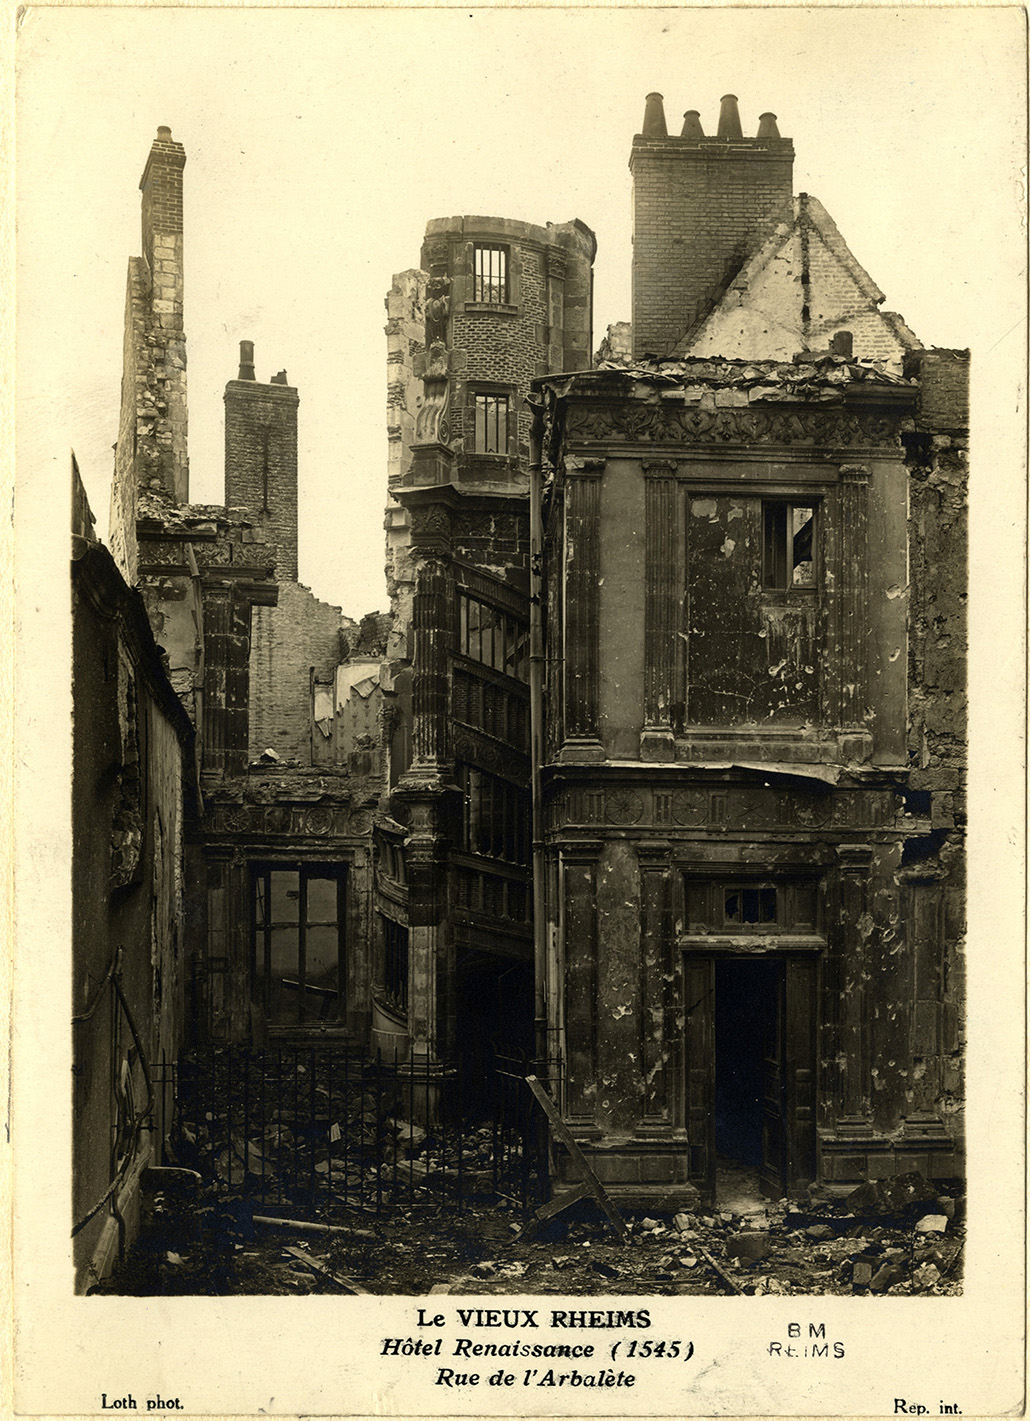 Le Vieux Reims. Hôtel Renaissance (1545) [en ruines], rue de l'Arbalète. Bm Reims, Demaison MC II 52